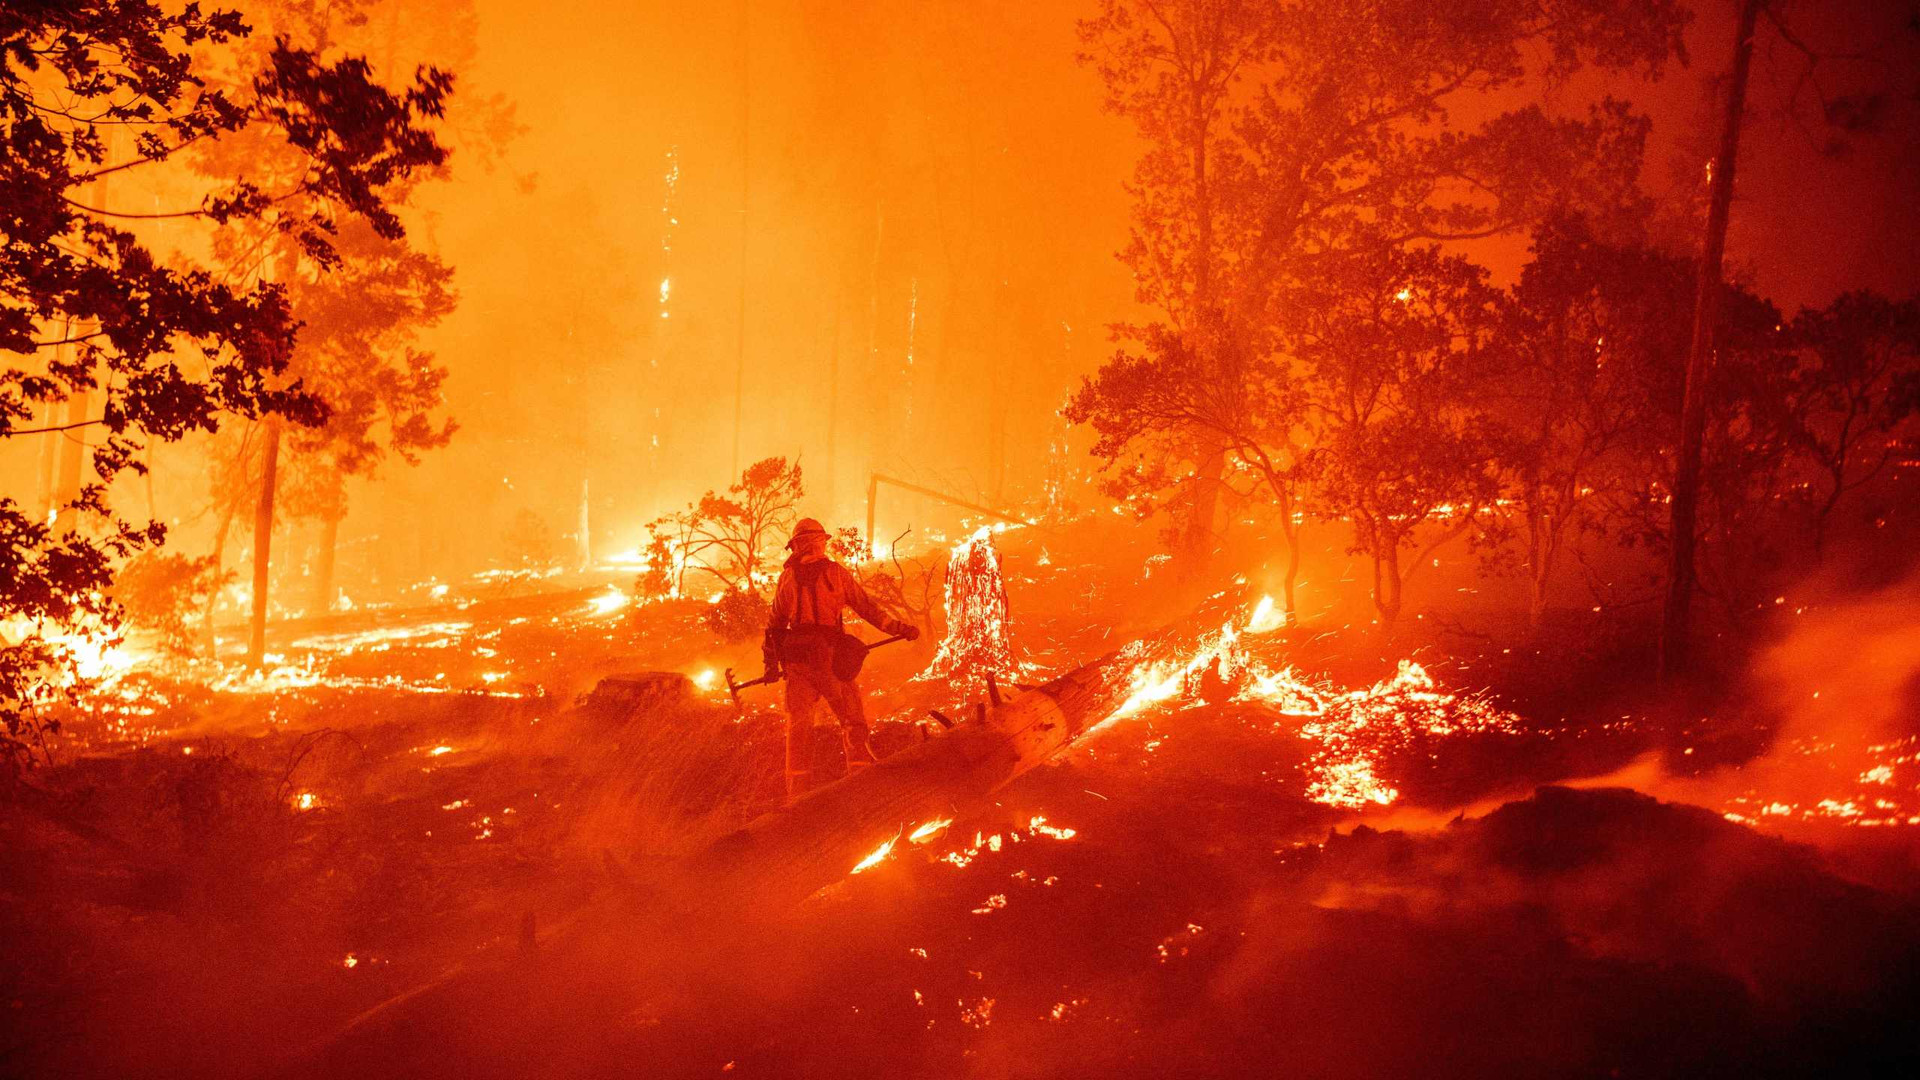 Một lính cứu hỏa chiến đấu với ngọn lửa trong đám cháy Creek ở khu vực Cascadel Woods, California, vào tháng 9/2020. Ảnh: CNN.